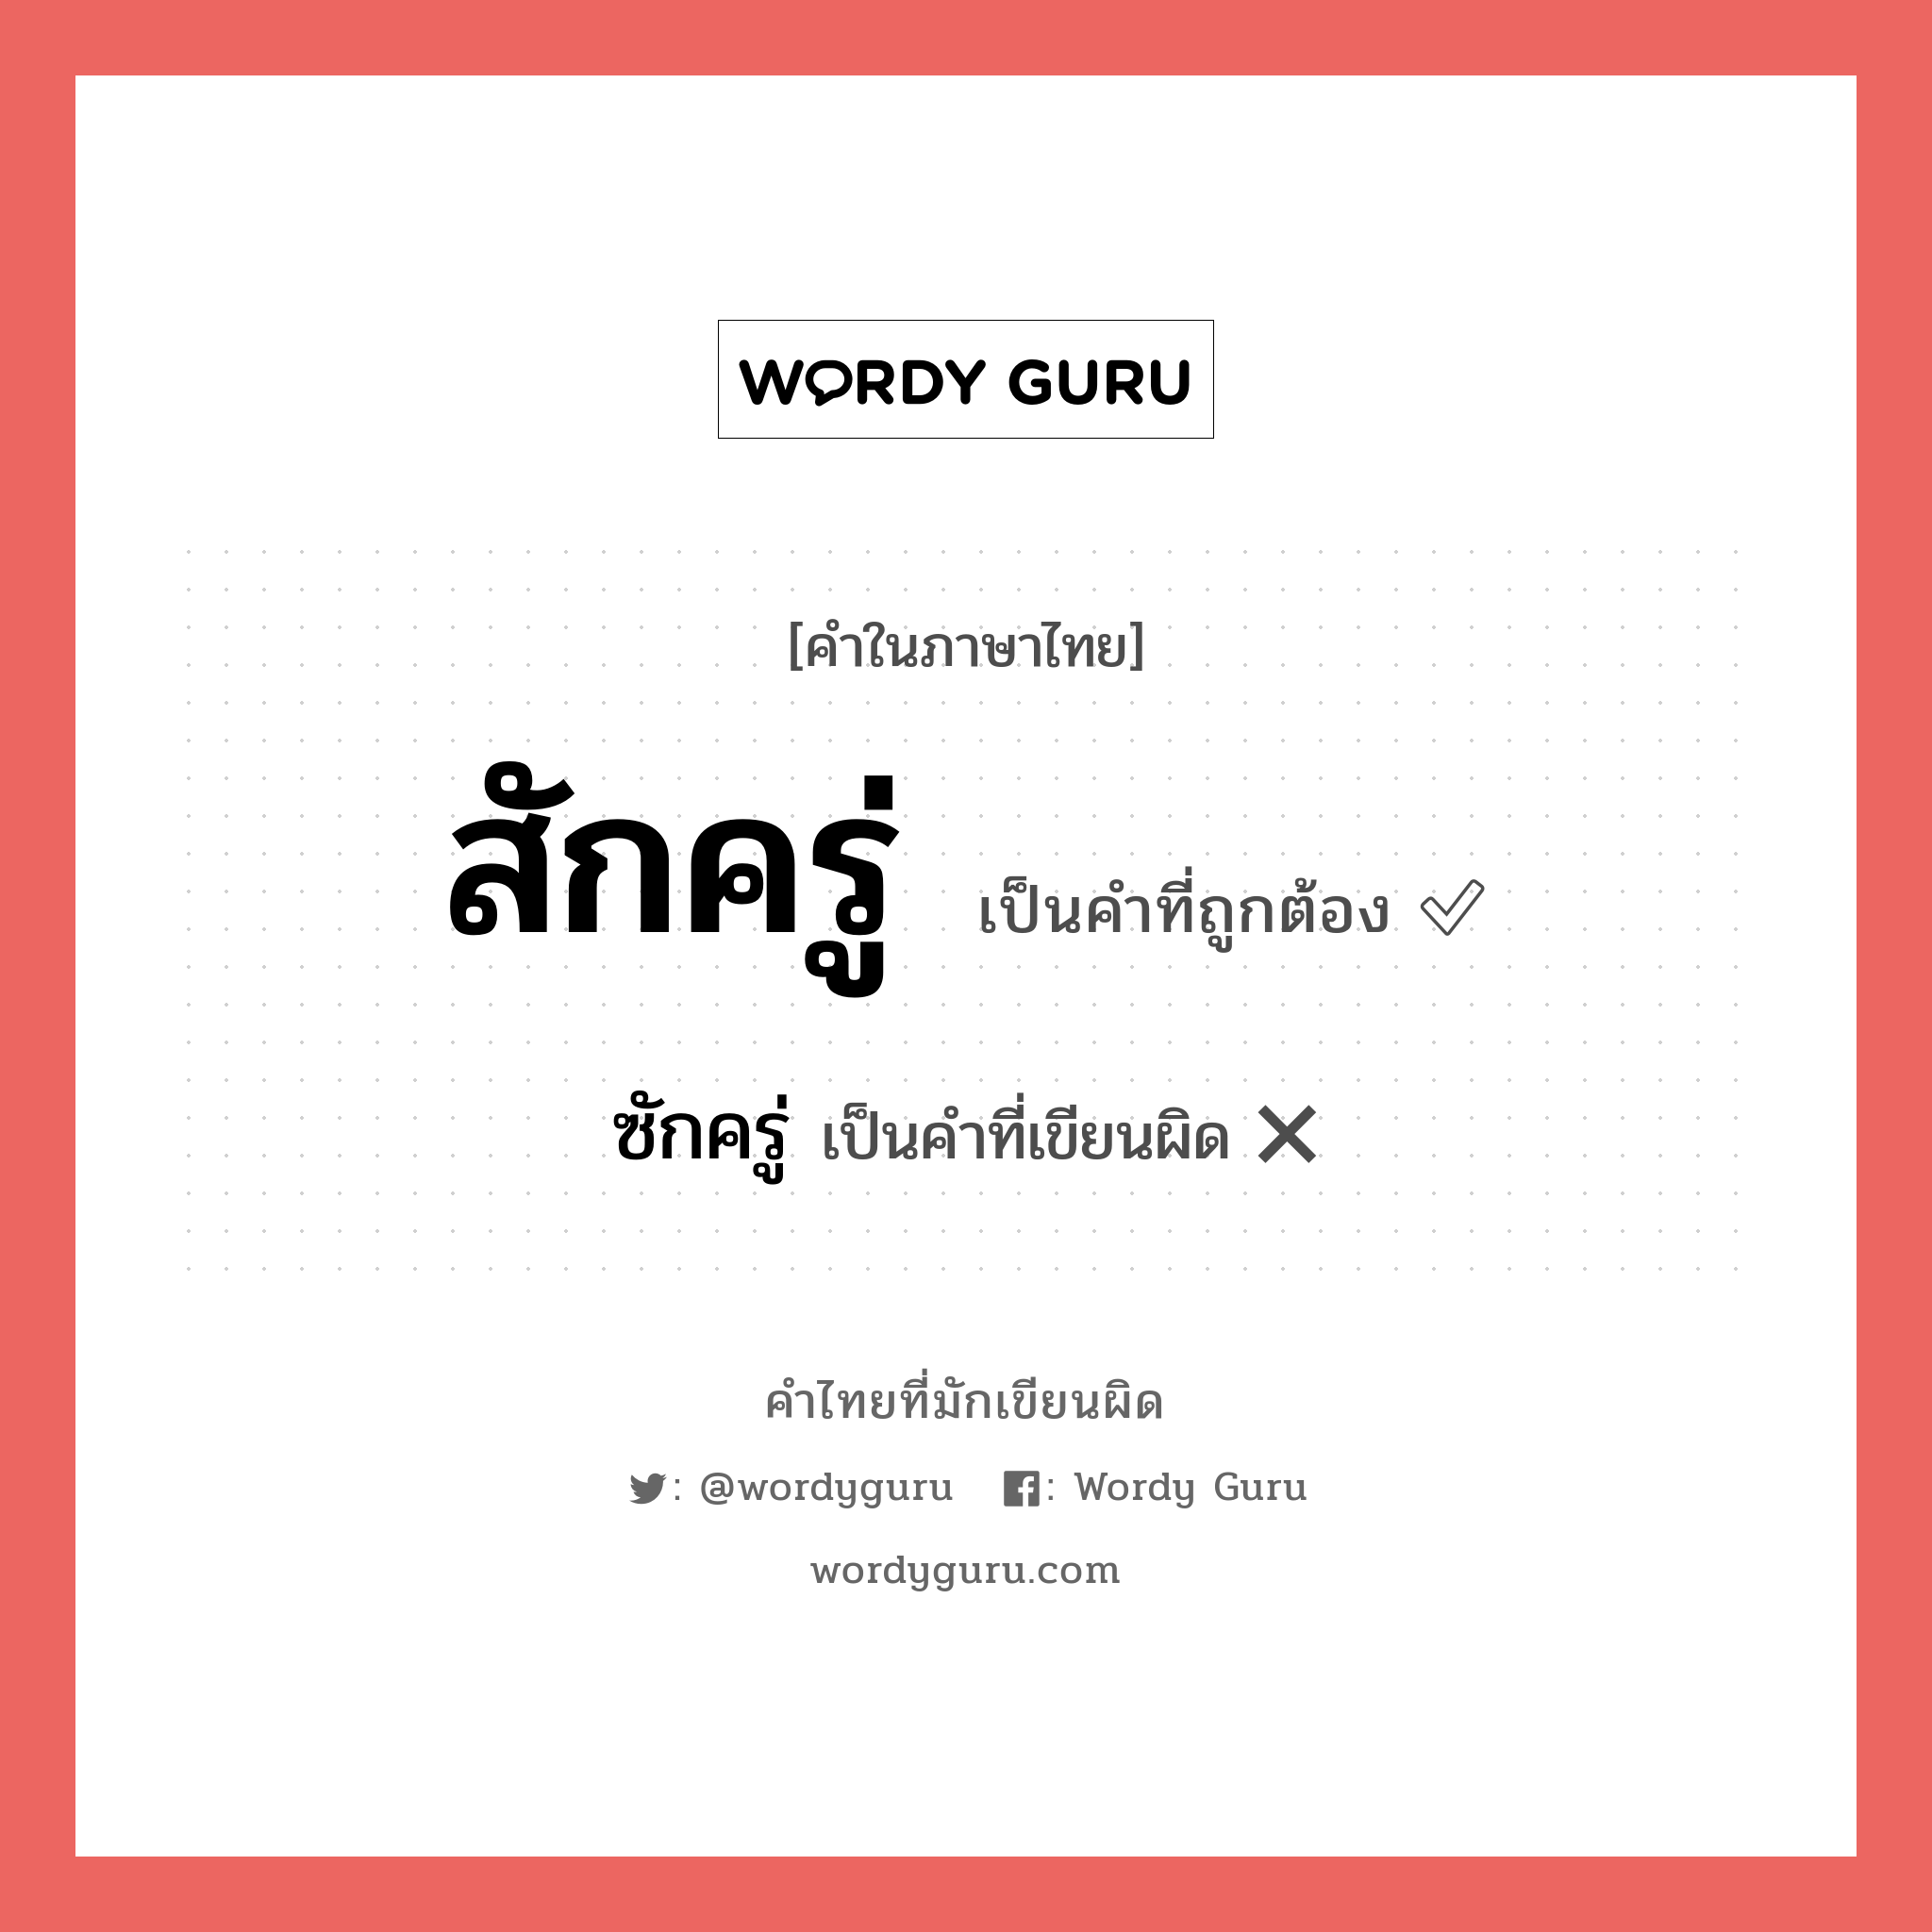 ซักครู่ หรือ สักครู่ คำไหนเขียนถูก?, คำในภาษาไทยที่มักเขียนผิด ซักครู่ คำที่ผิด ❌ สักครู่